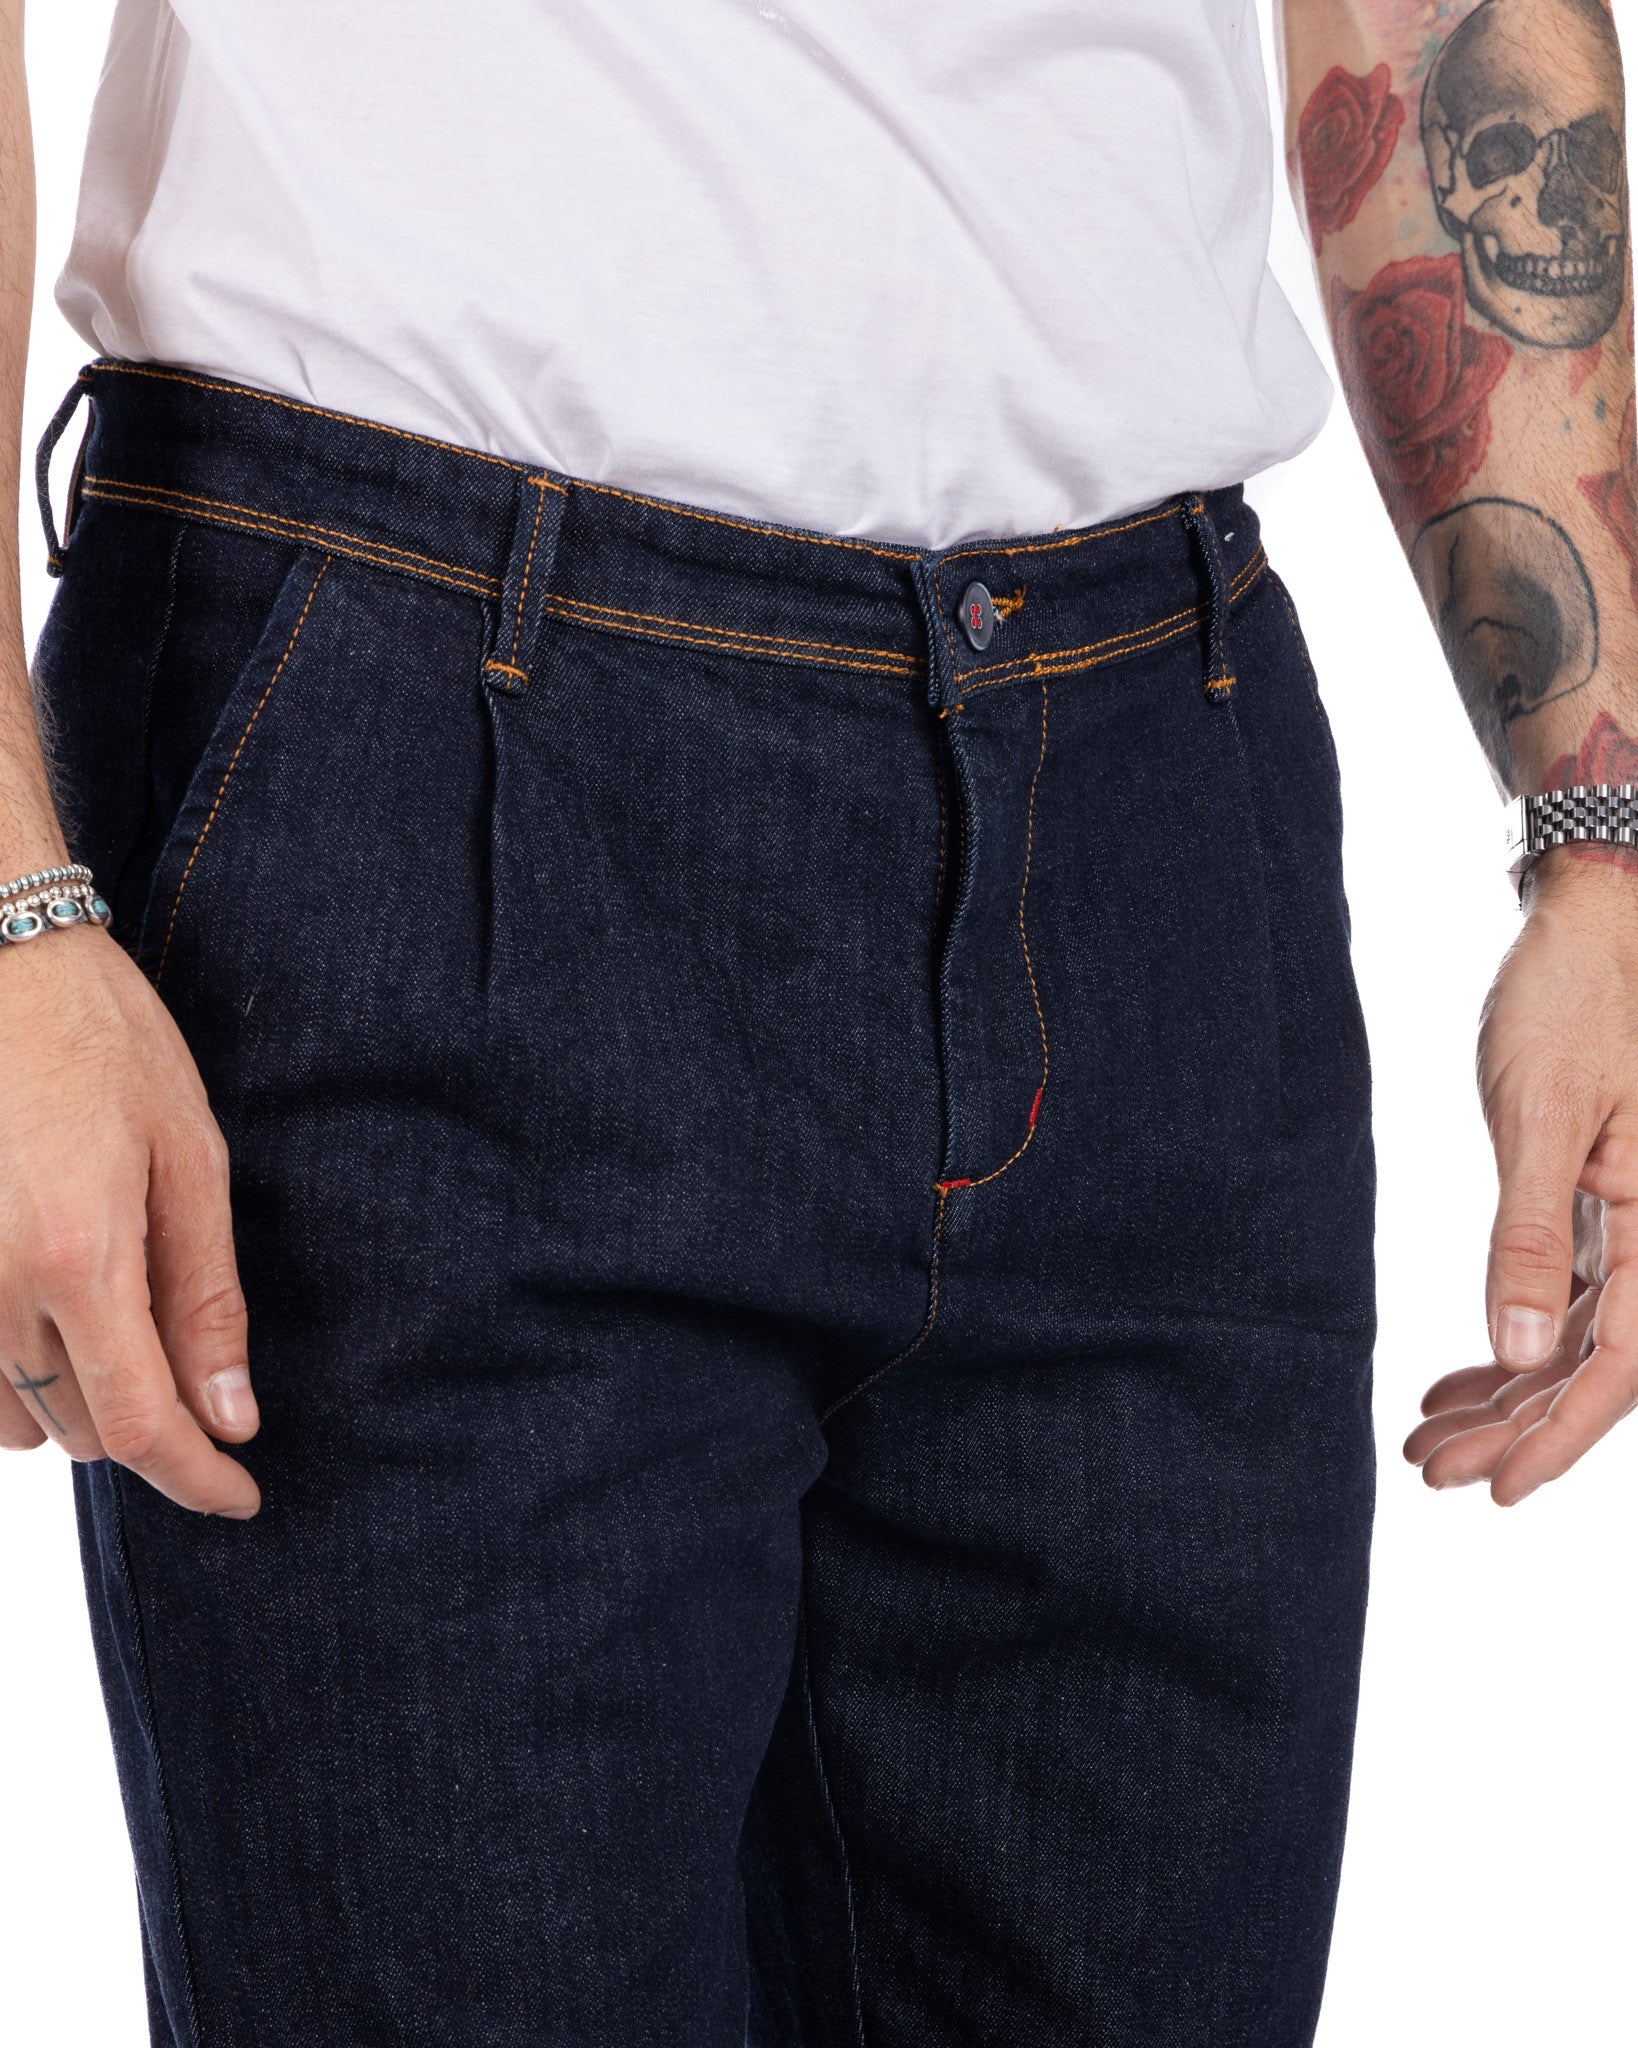 Orleans - jeans tasca america lavaggio zero